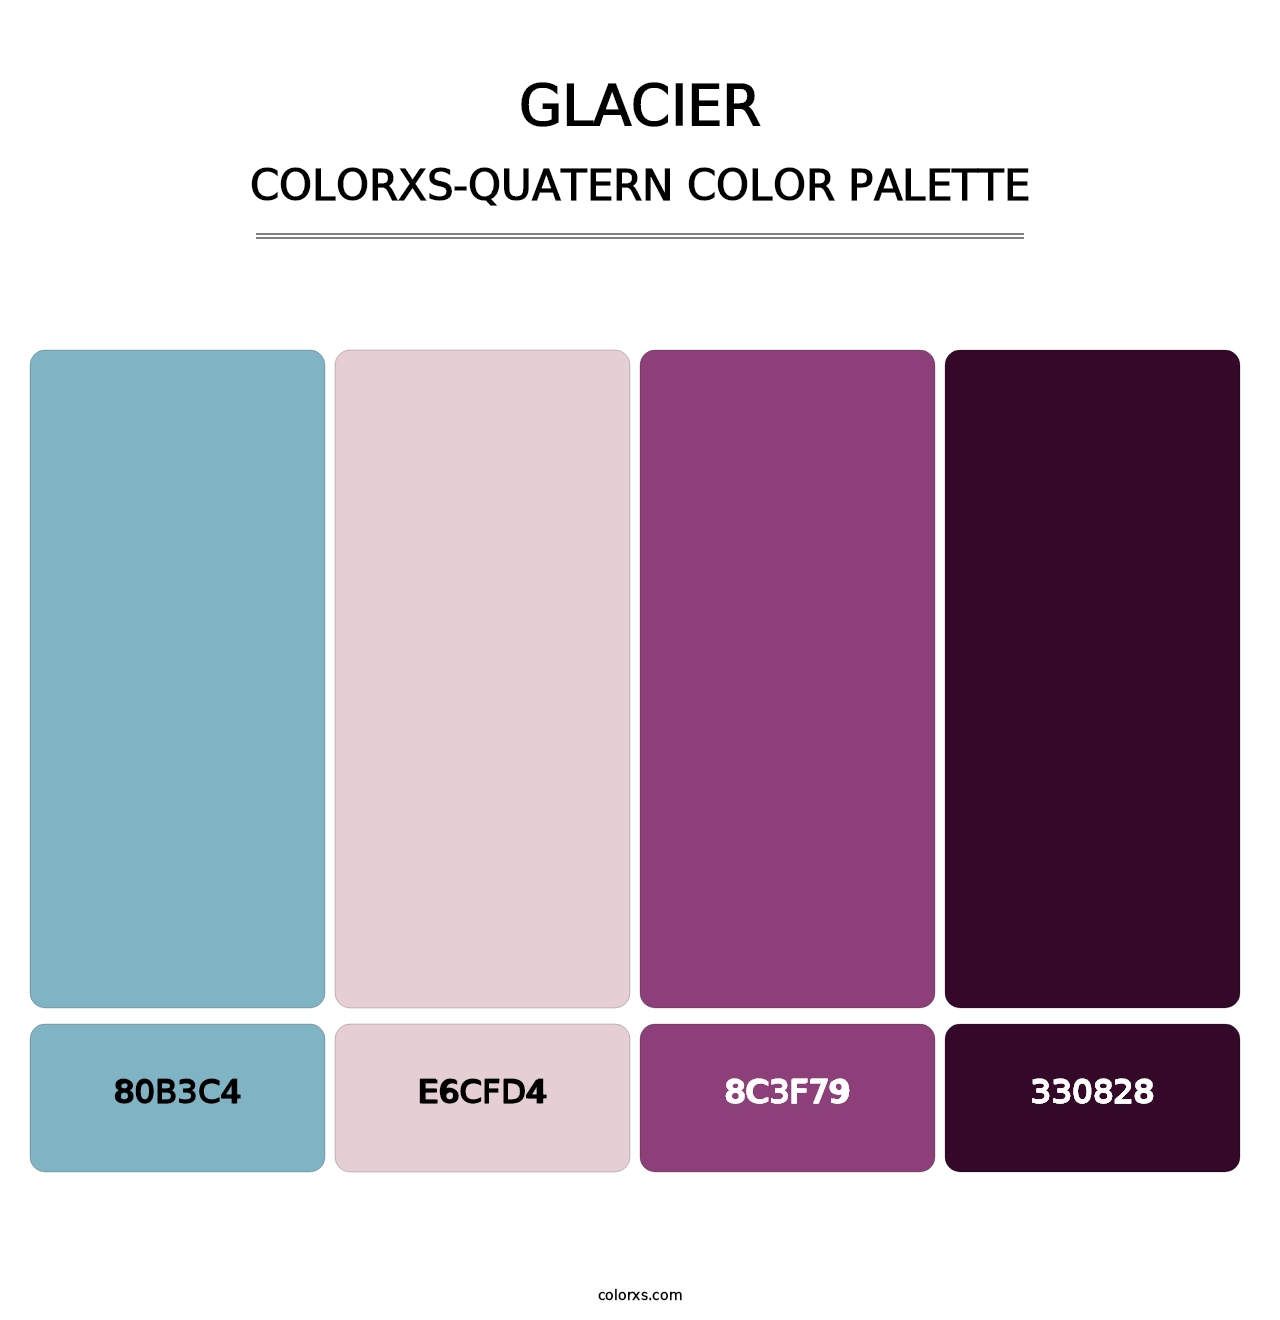 Glacier - Colorxs Quatern Palette